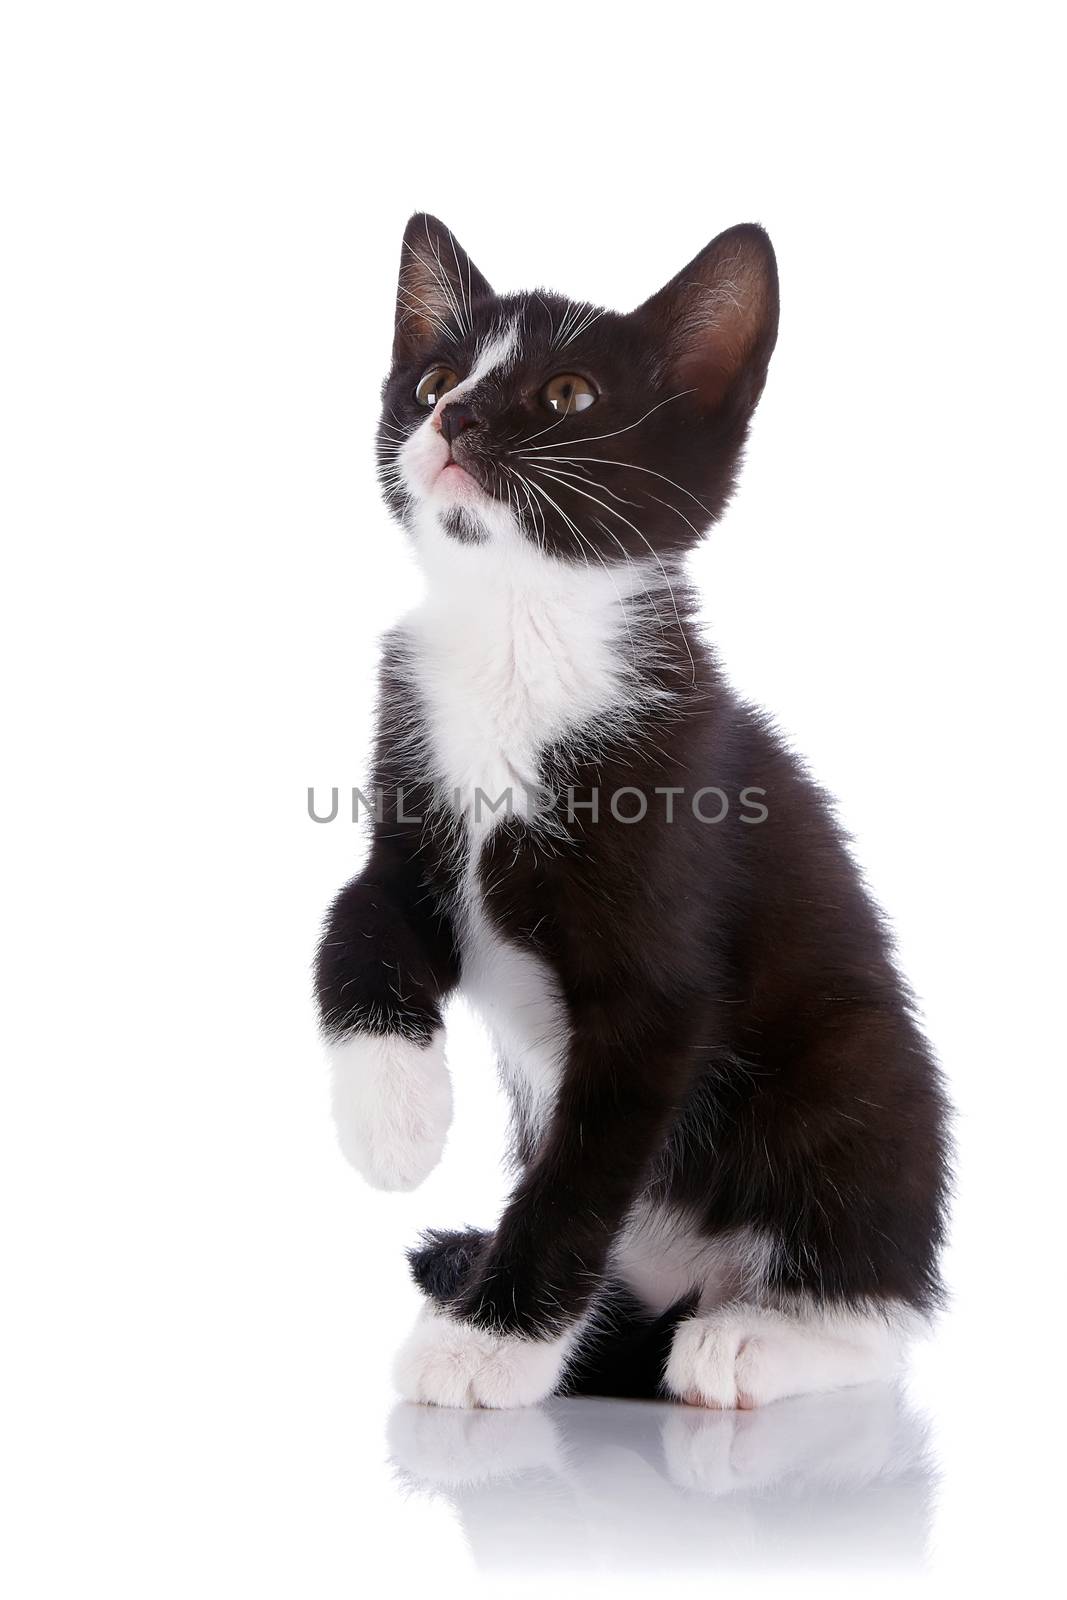 Black and white kitten sits on a white background. by Azaliya